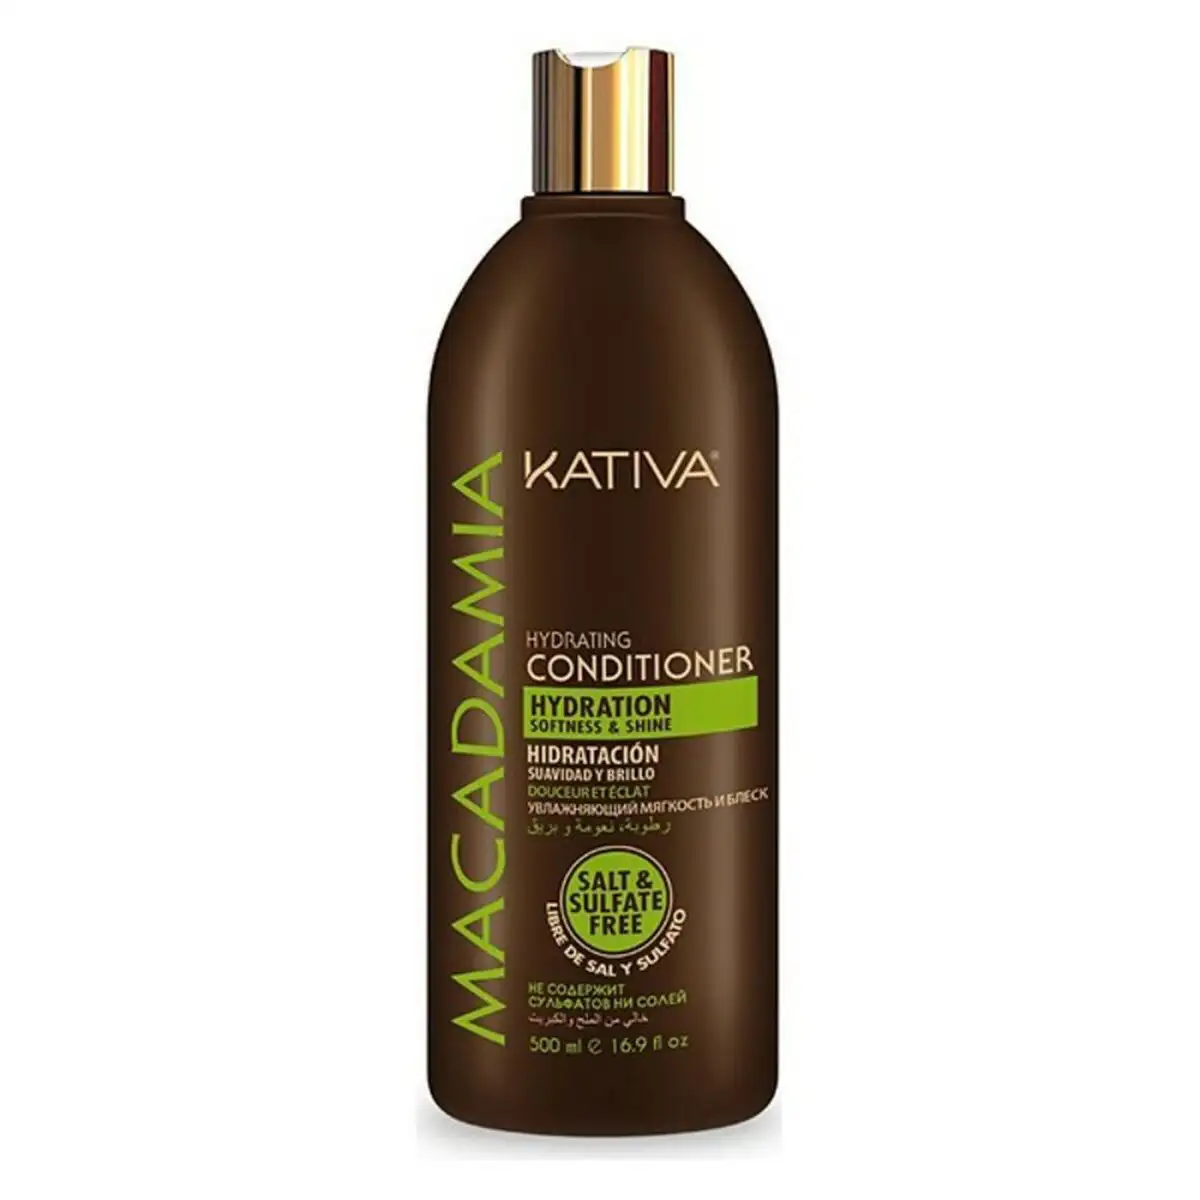 Apres shampooing macadamia kativa 500 ml 500 ml _7412. DIAYTAR SENEGAL - Où Chaque Produit est une Histoire à Raconter. Découvrez notre sélection de produits qui vous permettent de créer votre propre récit à travers vos achats.